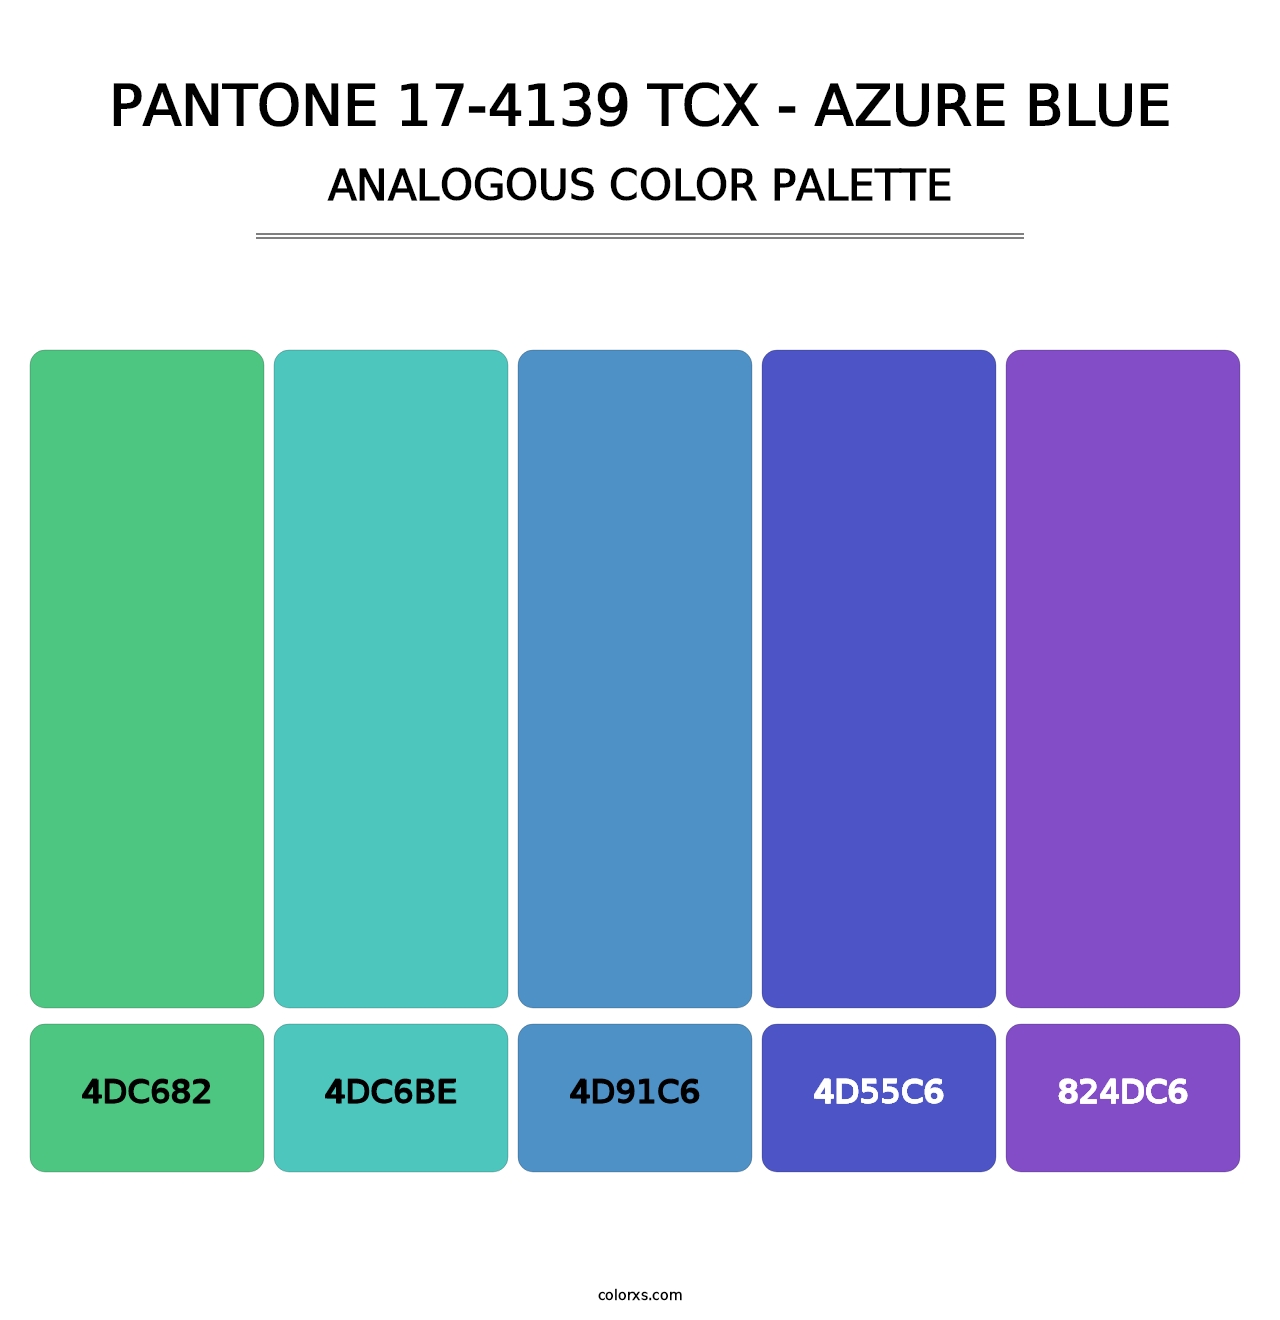 PANTONE 17-4139 TCX - Azure Blue - Analogous Color Palette